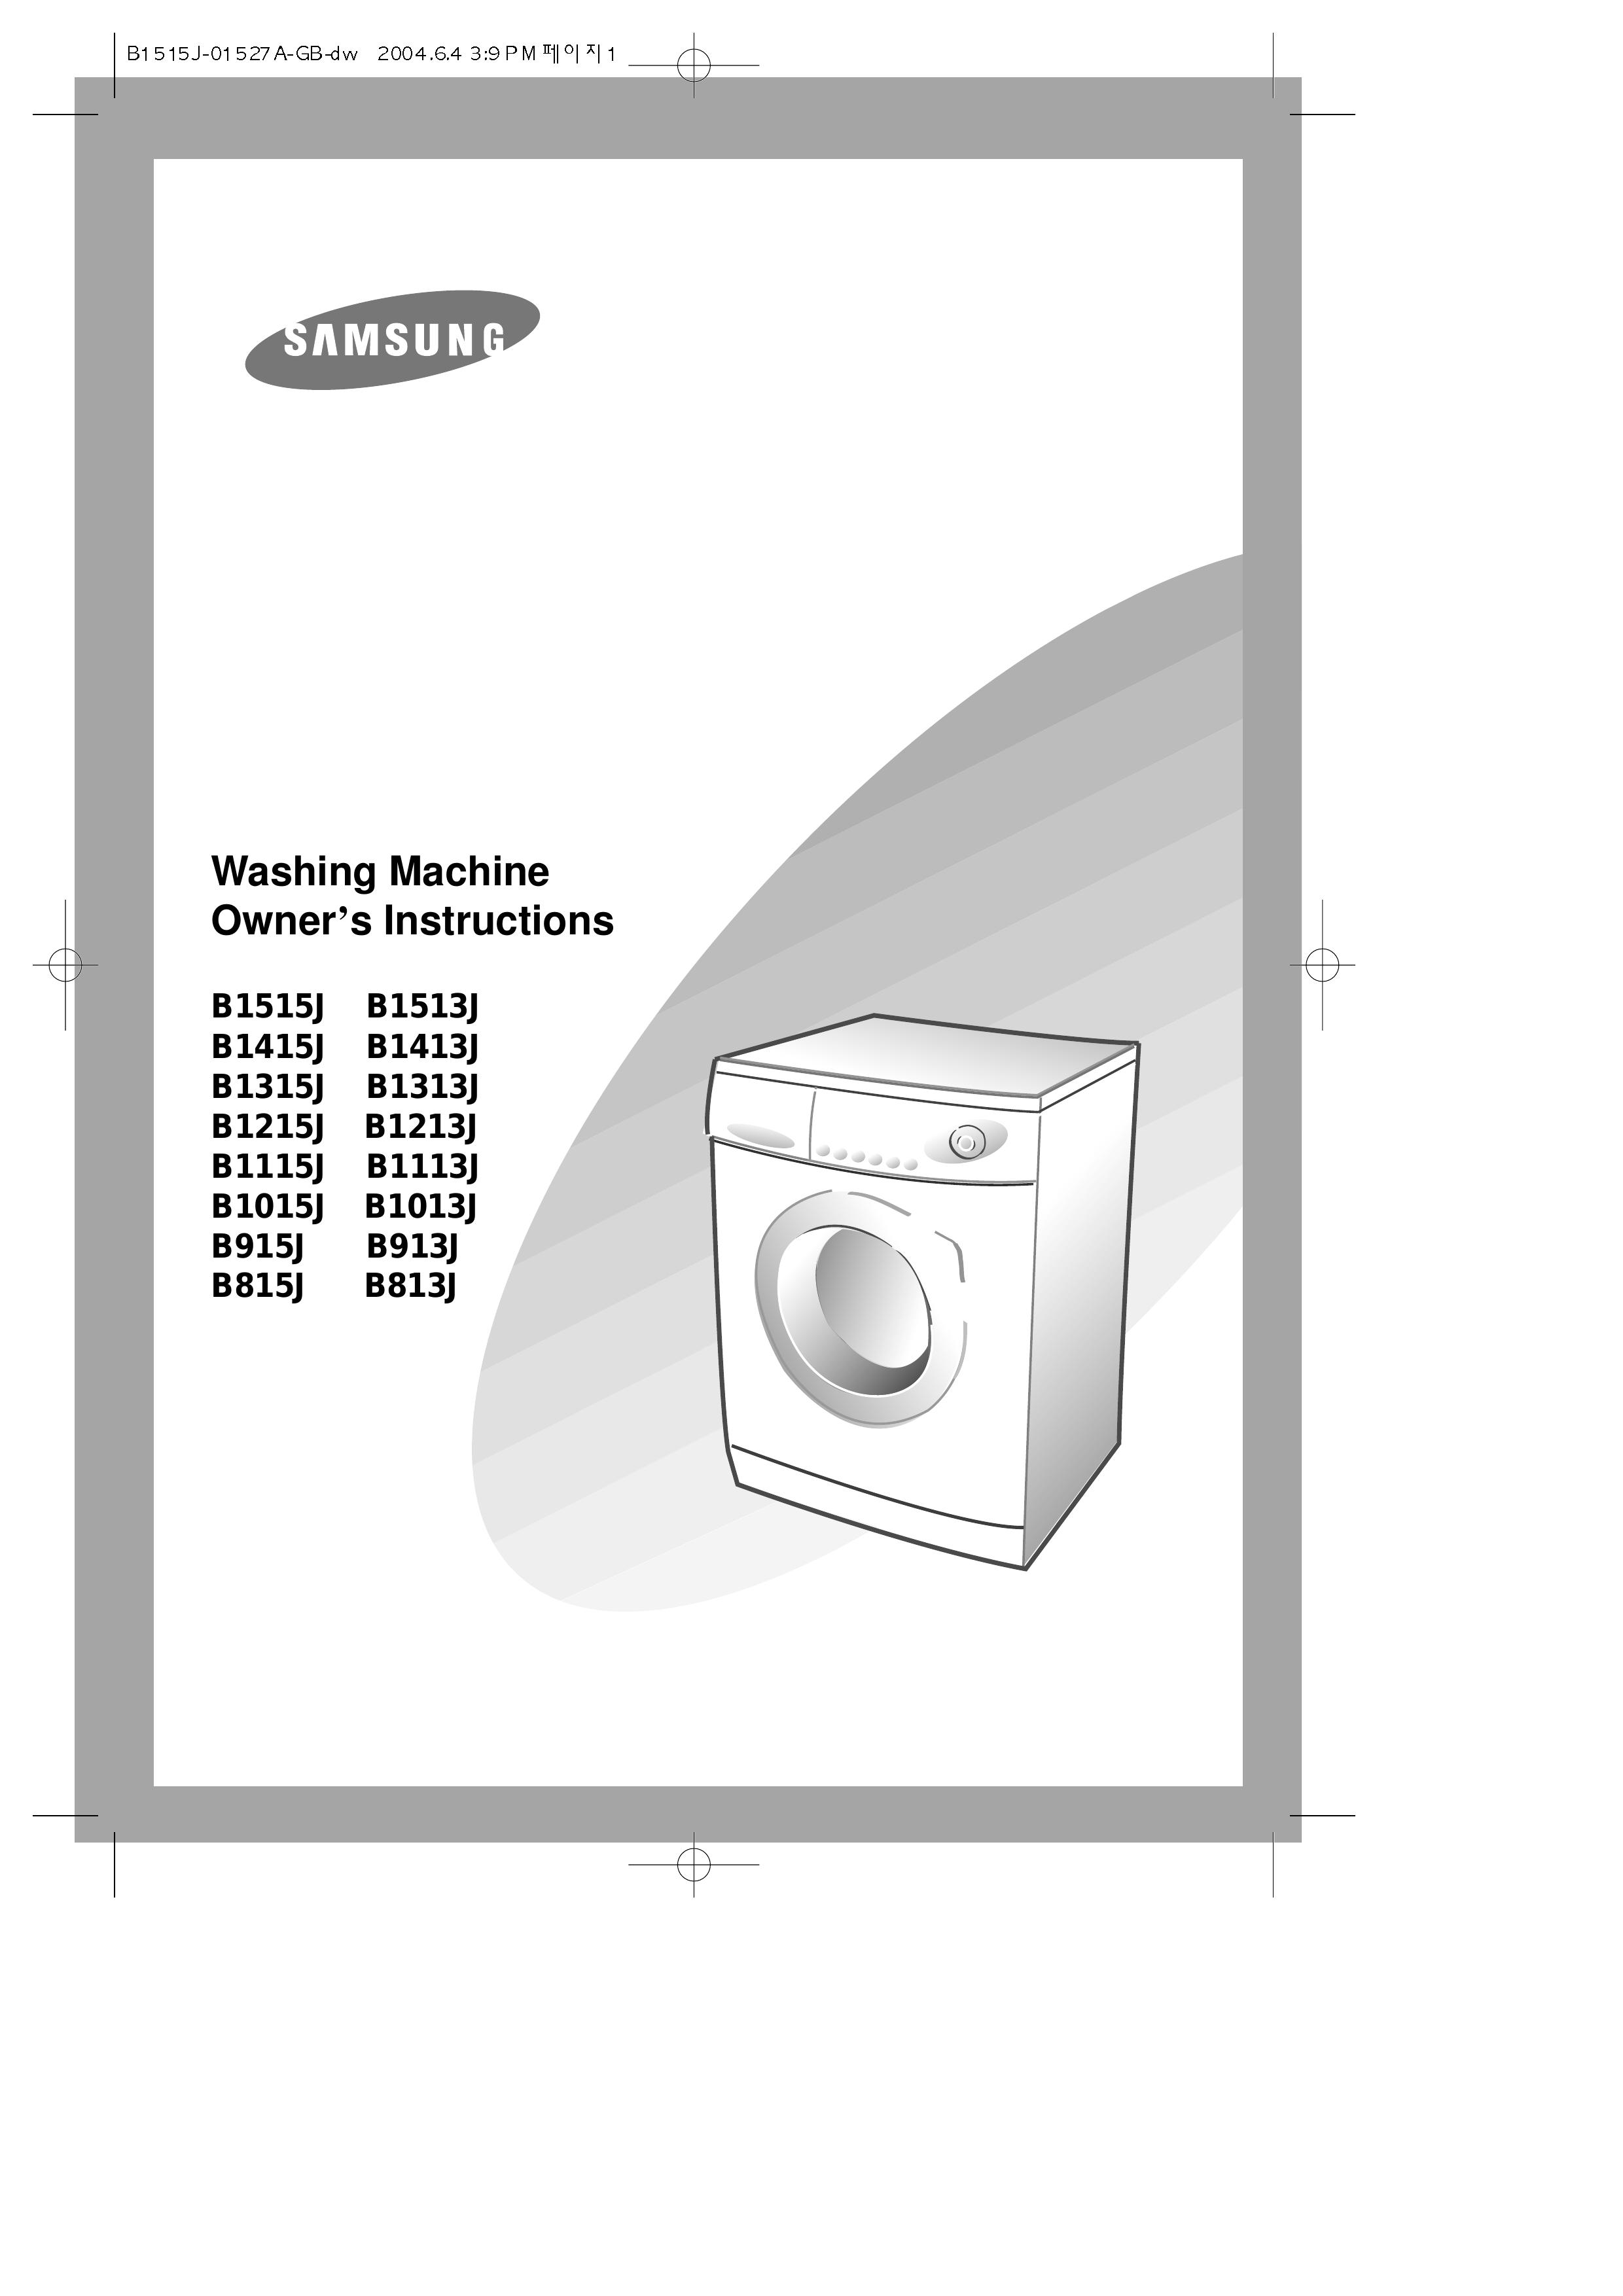 Samsung B1213J Washer User Manual